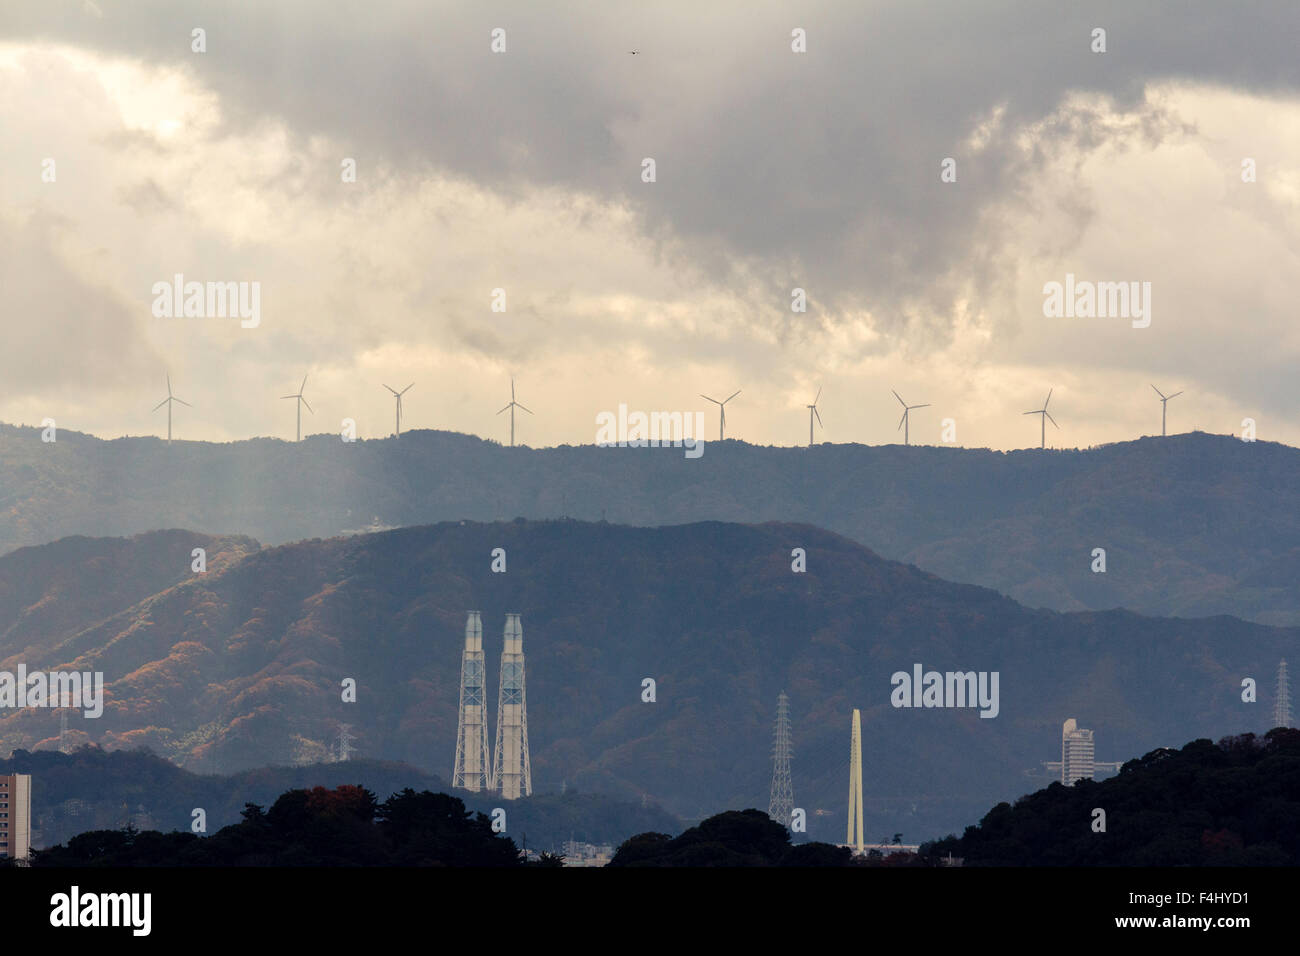 Wakayama, Japan, silhouetted Windenergieanlagen auf die Berge in der Ferne mit verschiedenen Industrieschornsteinen im Vordergrund. Regen, Sturm, aber einige Sonnenlicht. Stockfoto